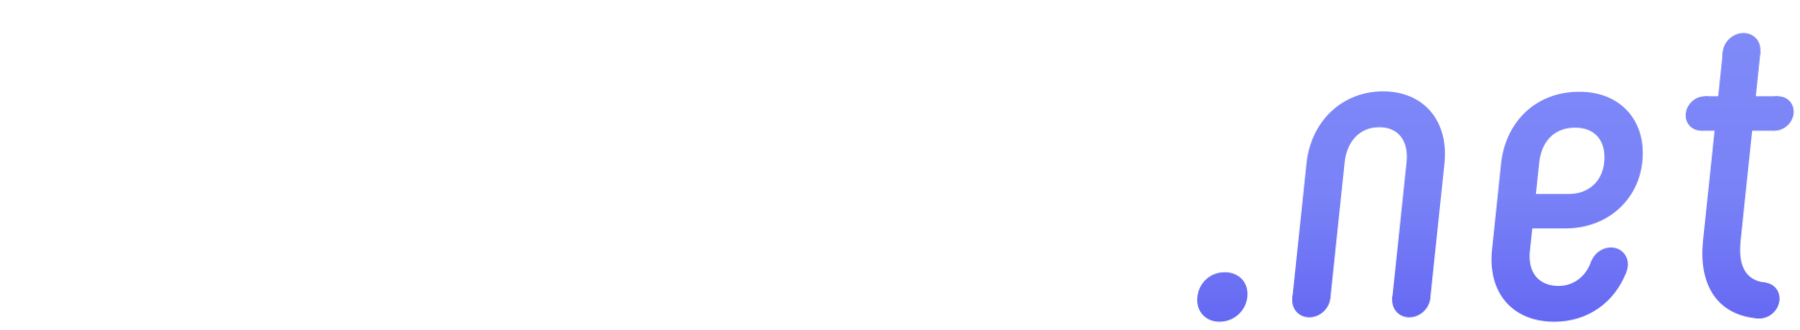  Facture.net